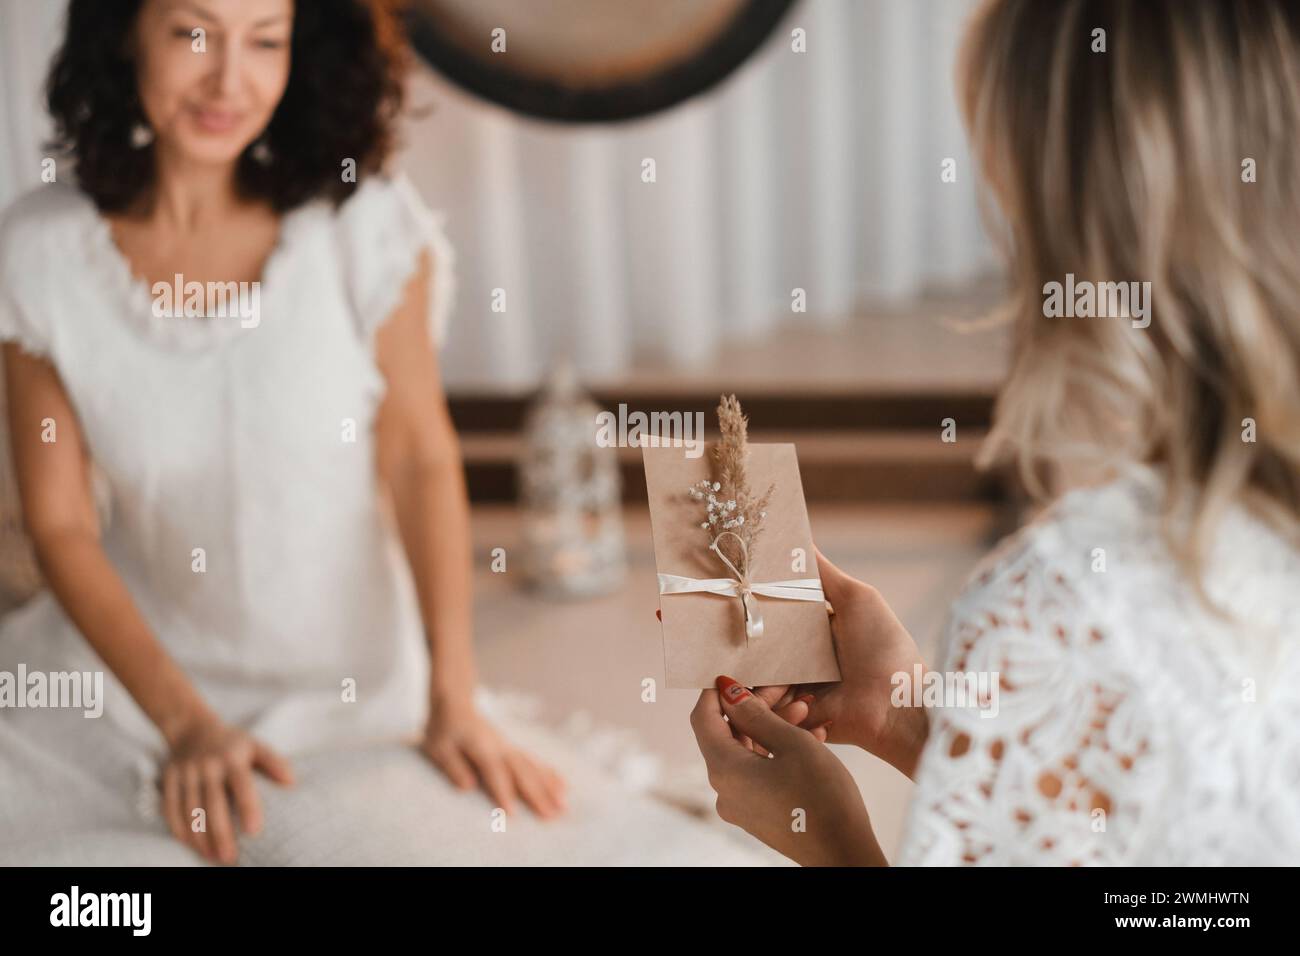 Una donna in abiti bianchi tiene una busta con un desiderio tra le mani. Il concetto di cerchio femminile. Foto Stock